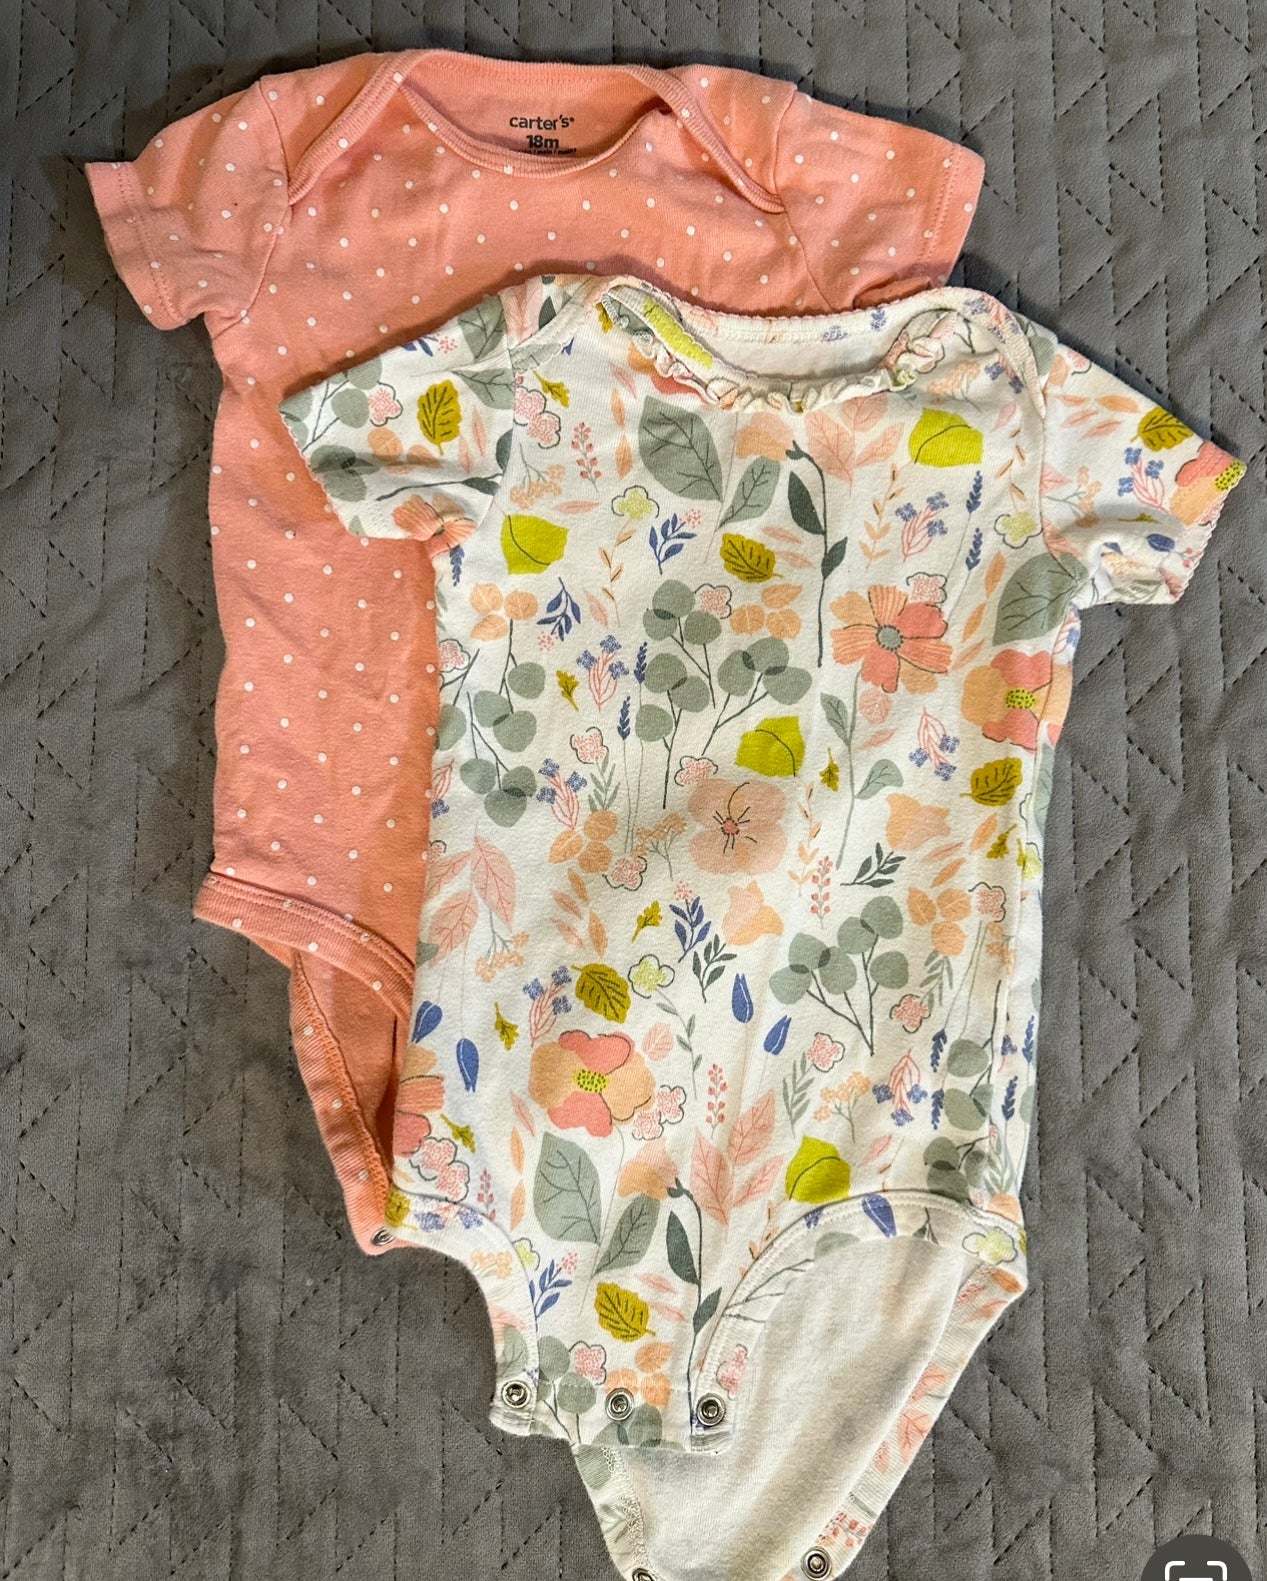 Carter’s onesie bundle girls size 18 months